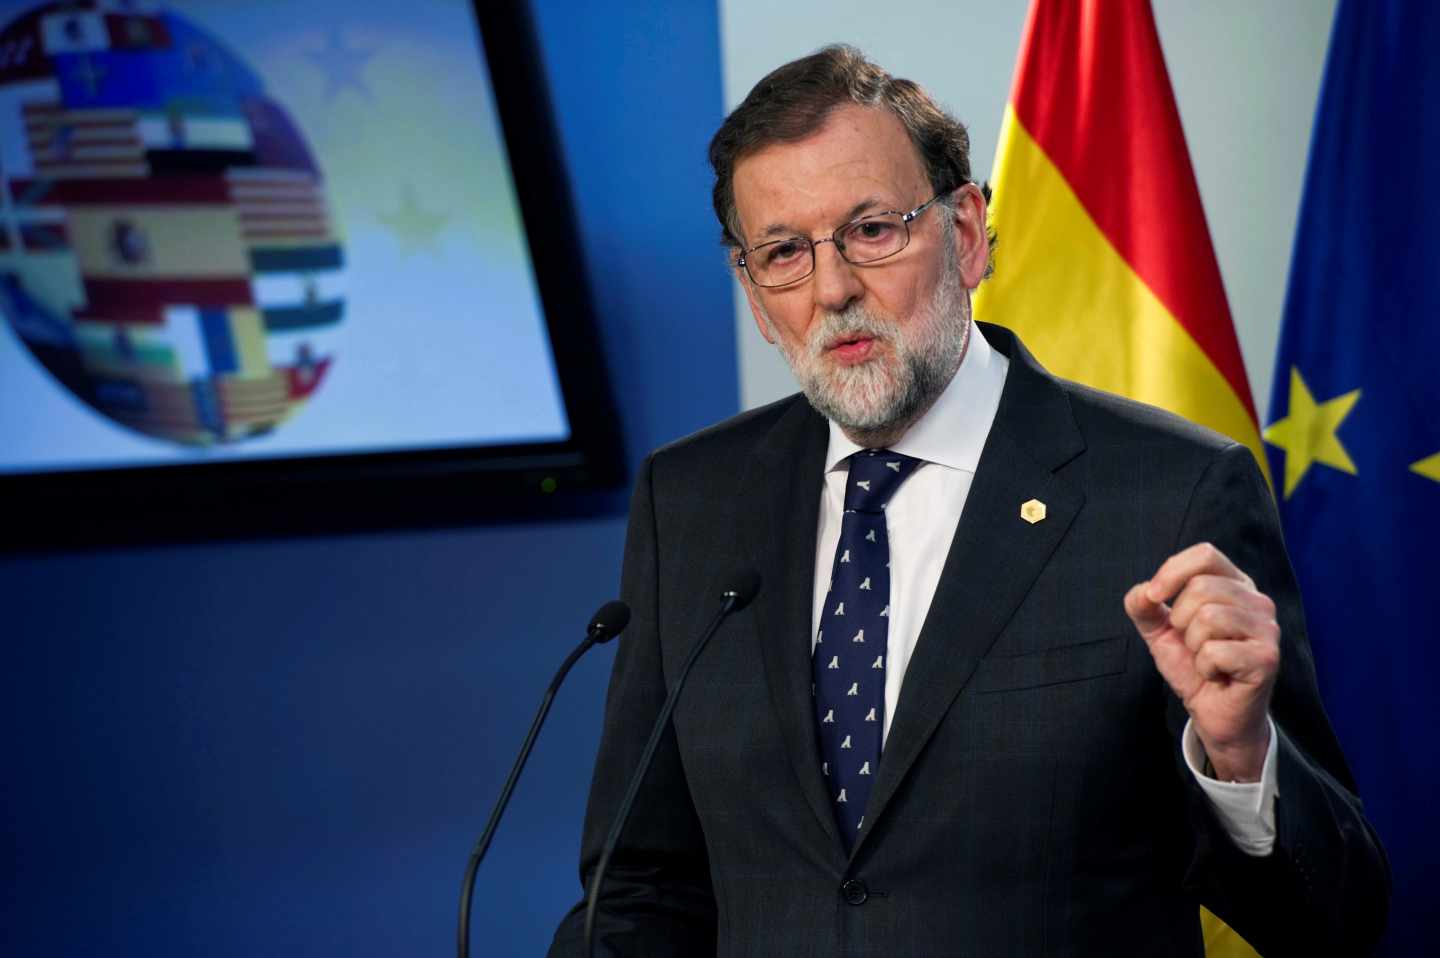 El presidente del gobierno español, Mariano Rajoy, en rueda de prensa tras el Consejo Europeo.